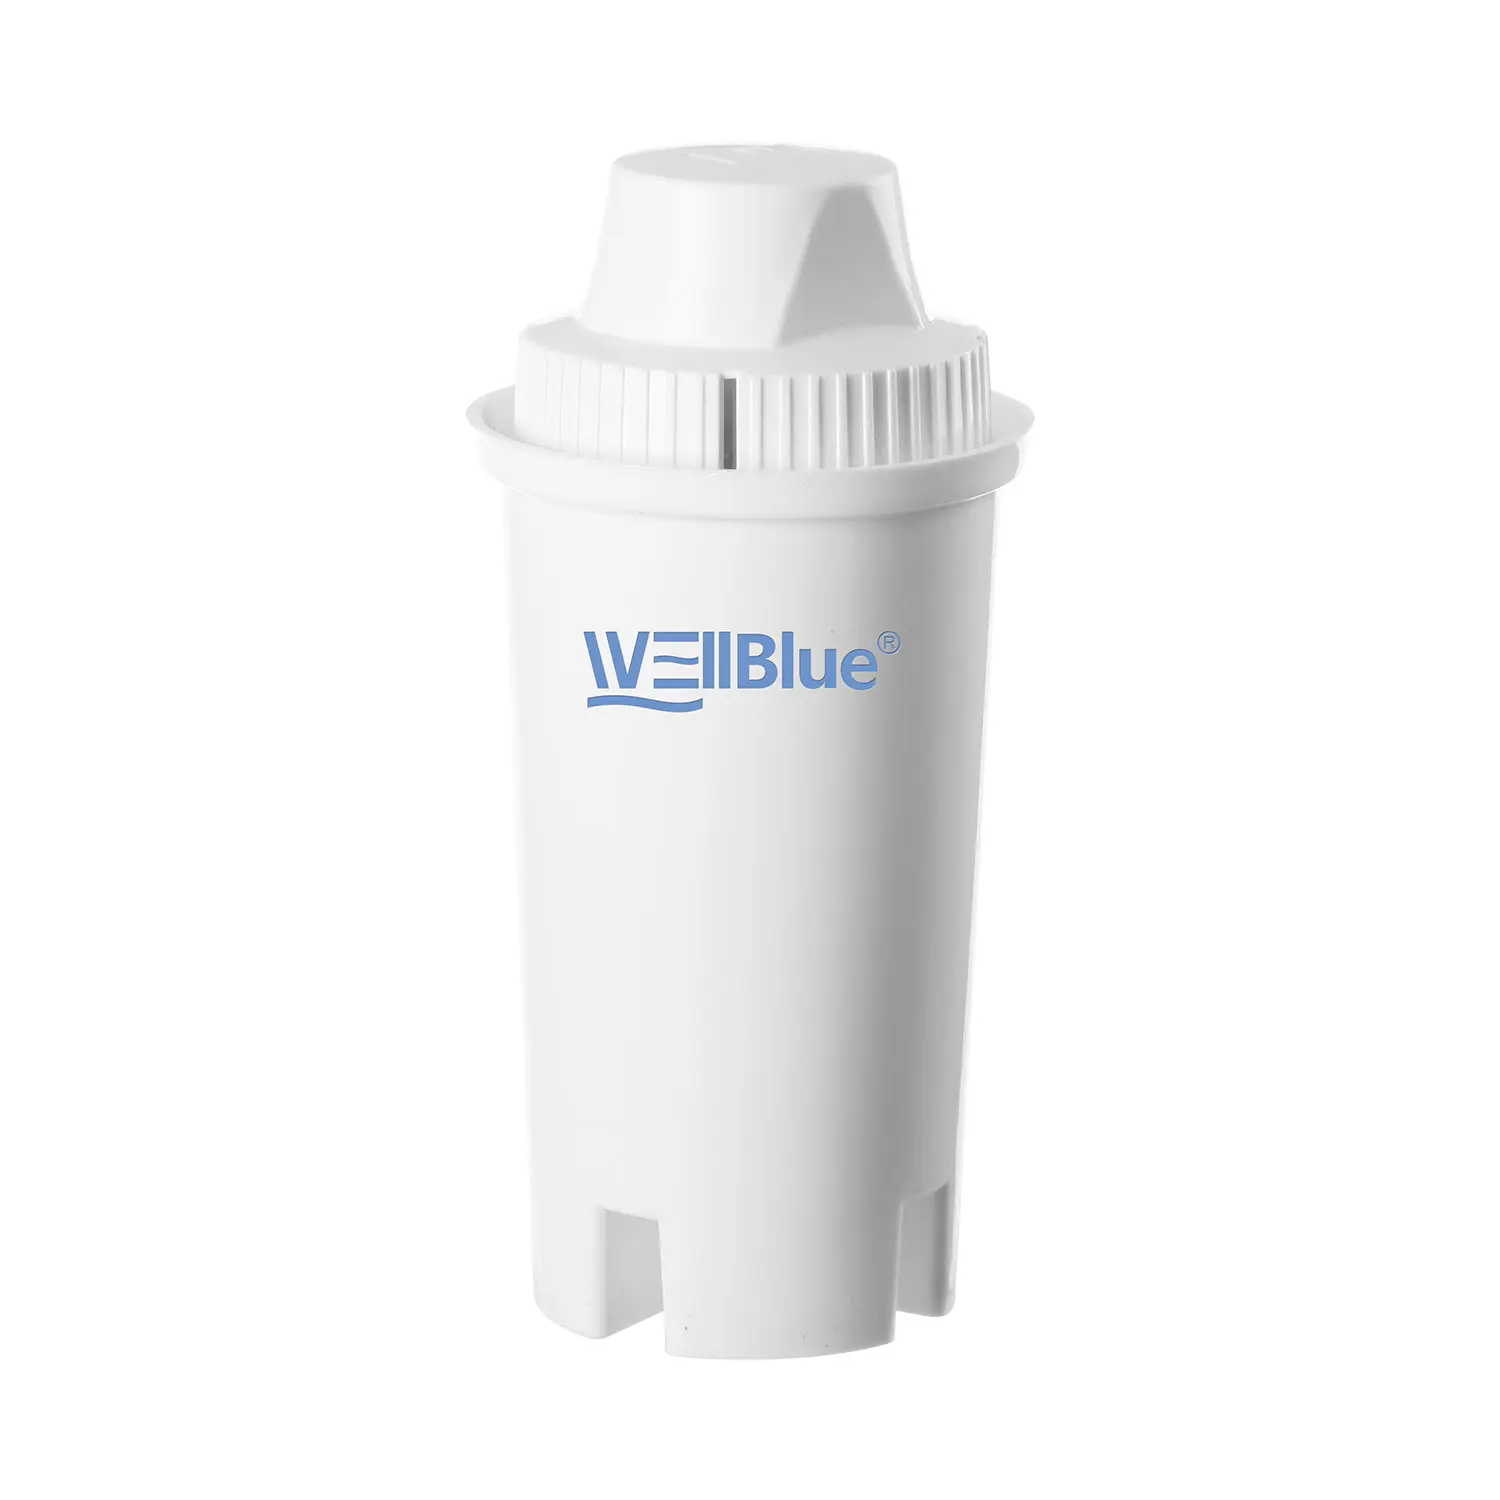 Novo design de filtros de substituição de cartucho de filtro, melhor jarro de filtro de água alcalina